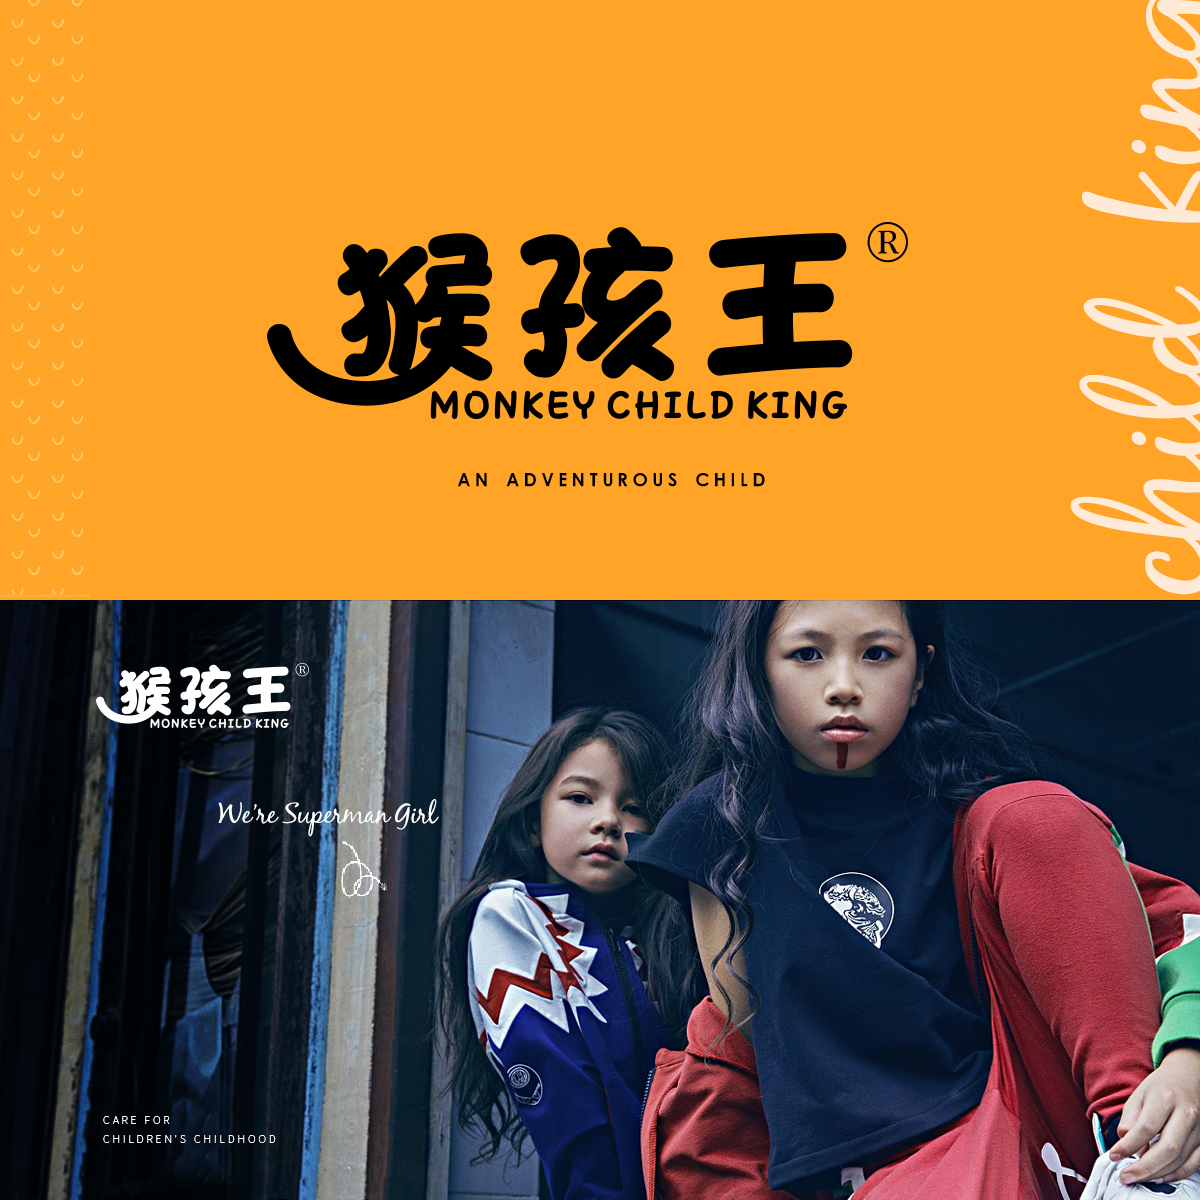 猴孩王 MONKEY CHILD KING